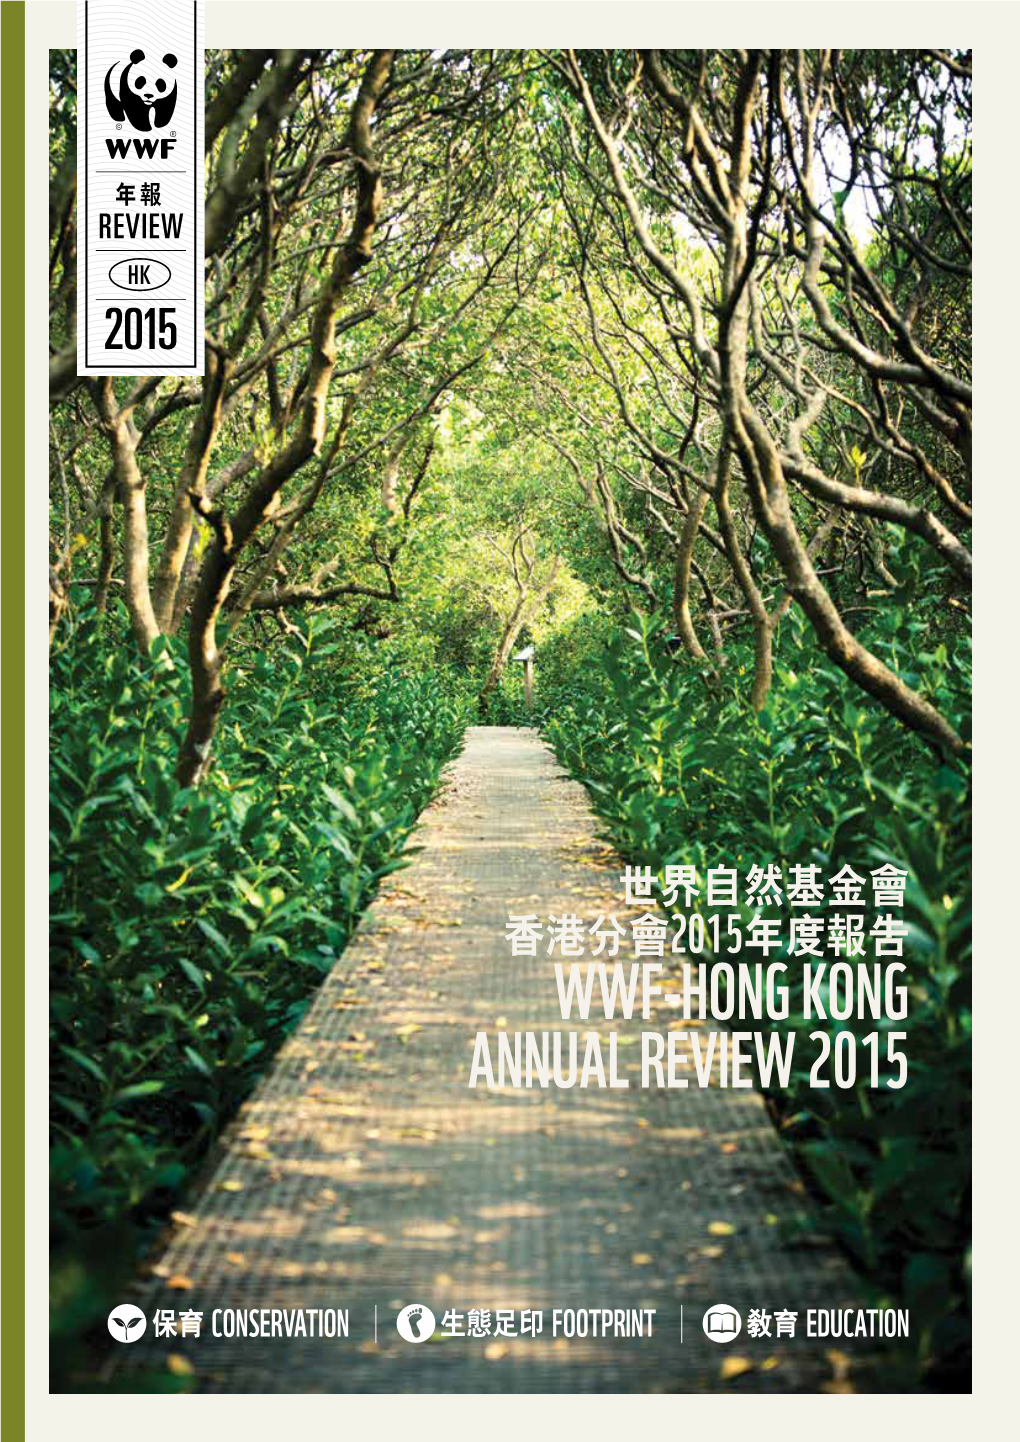 Wwf-Hong Kong Annual Review 2015